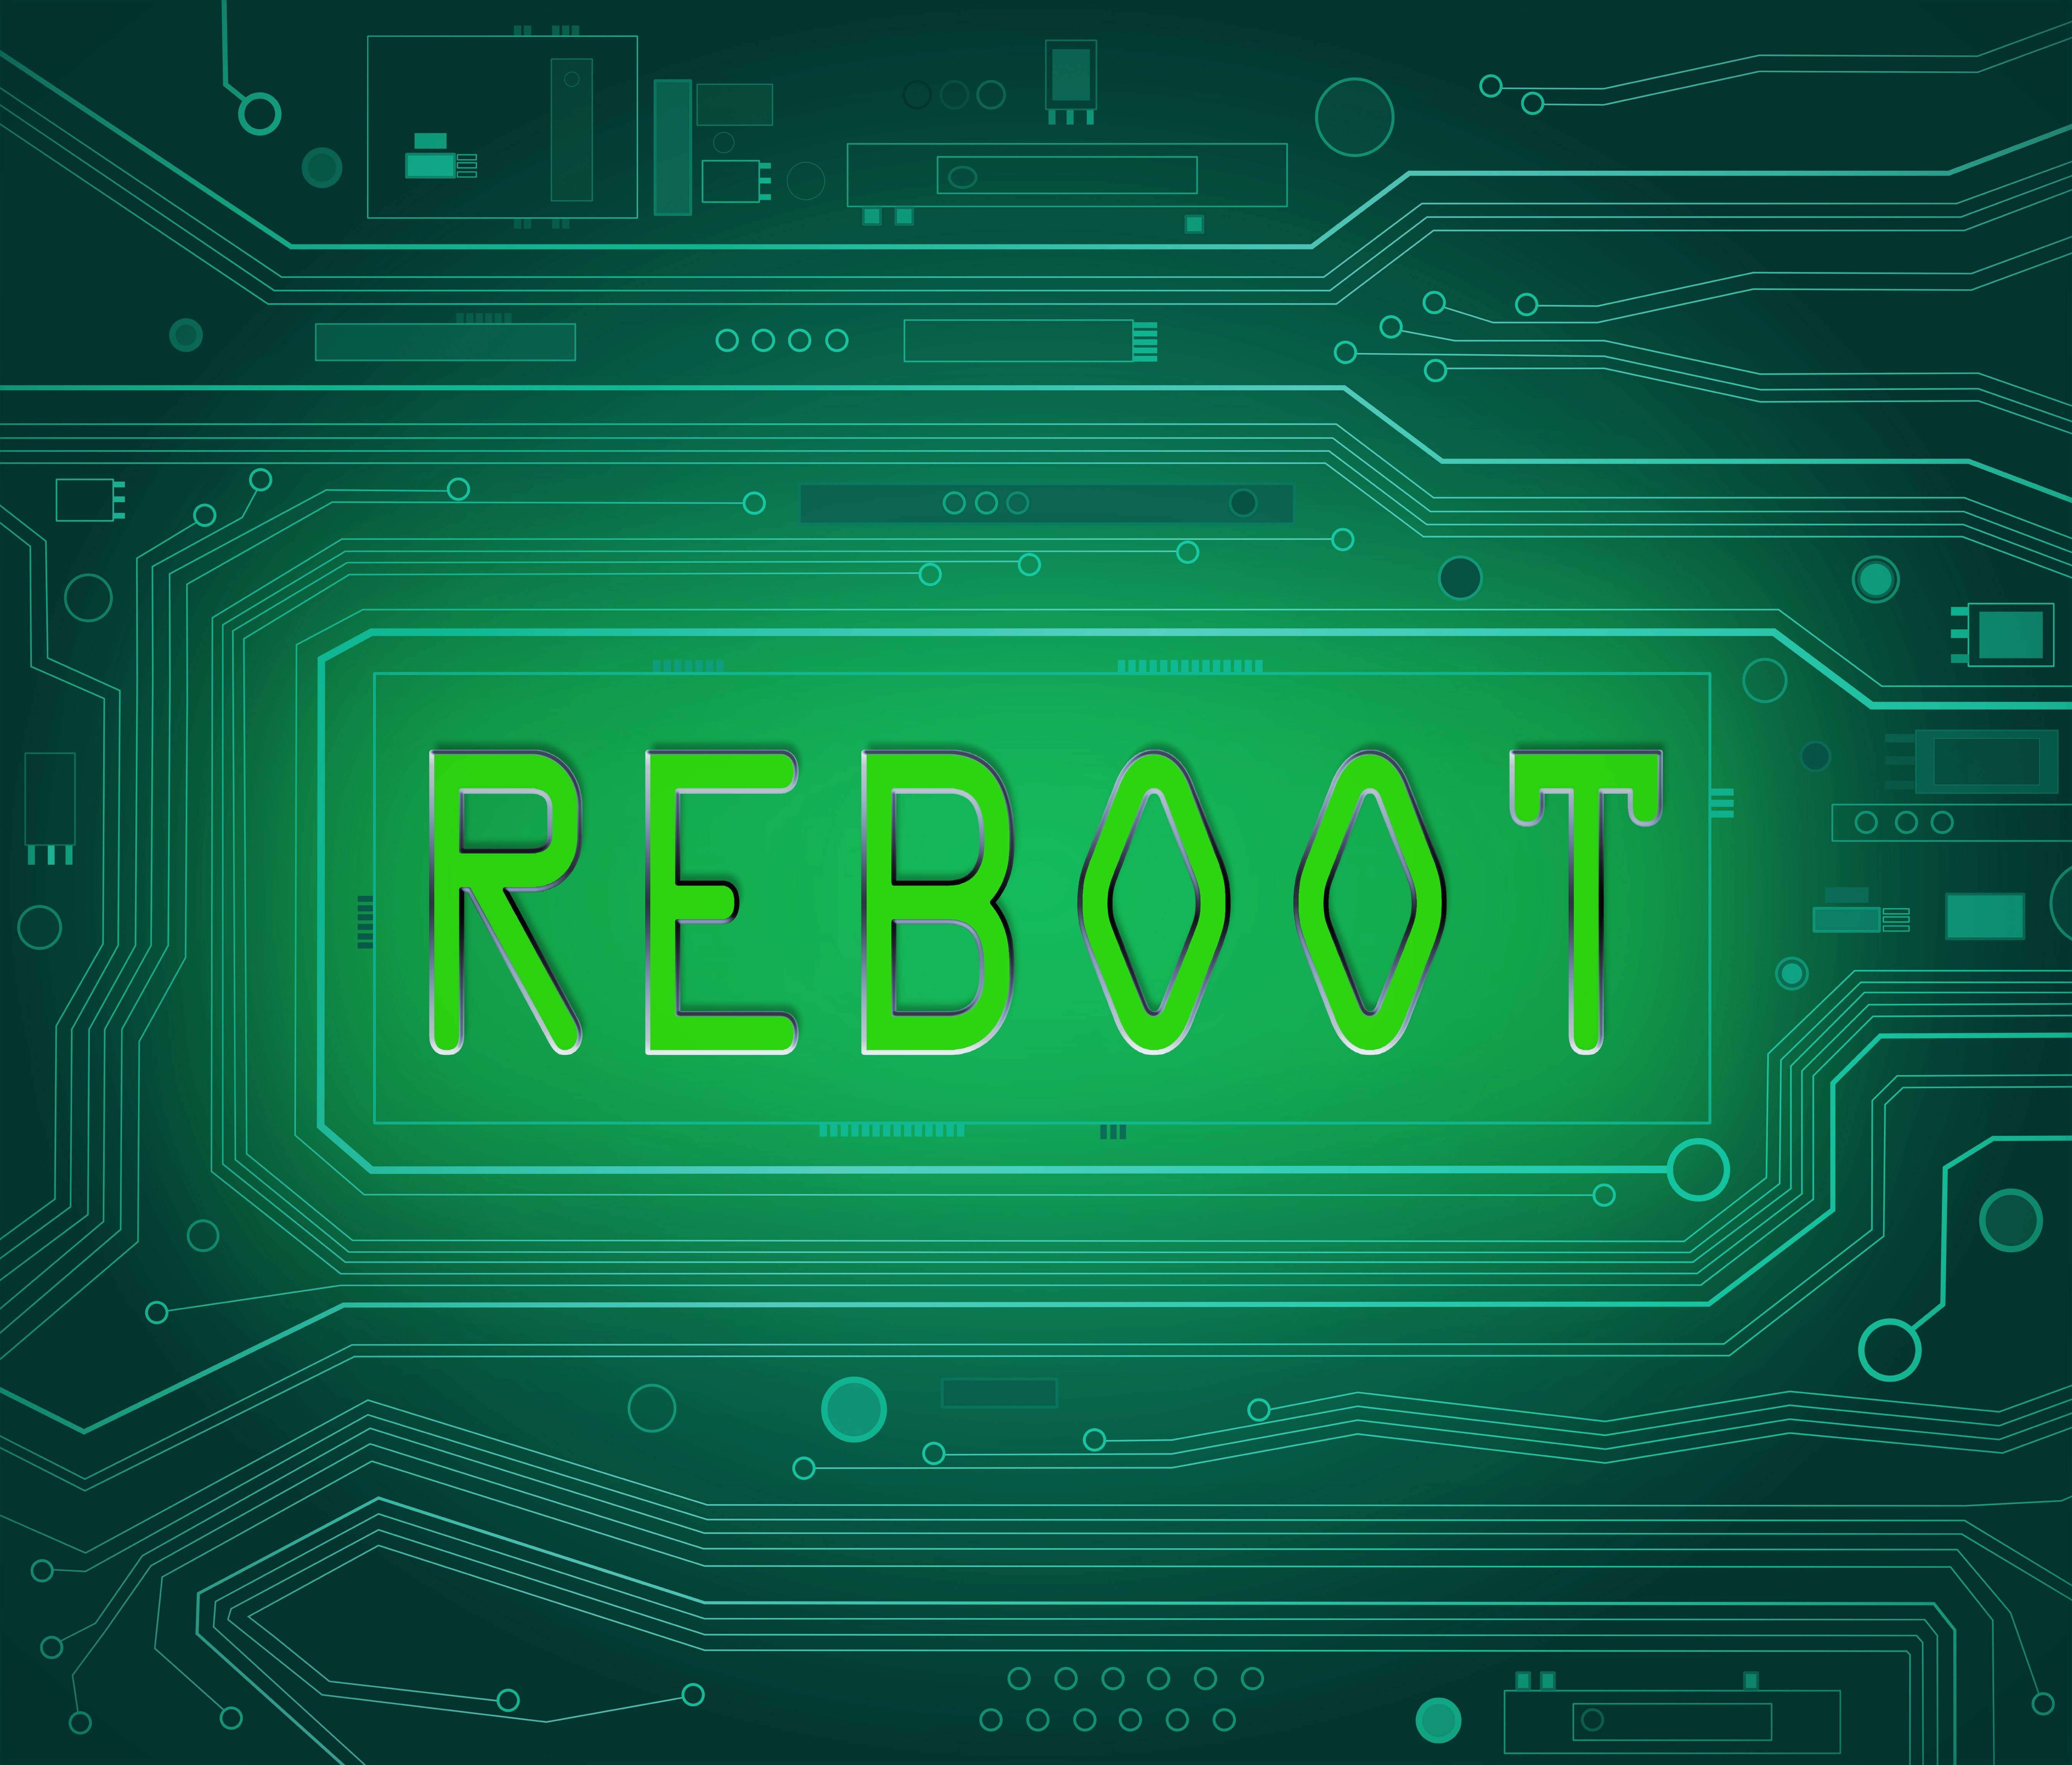 reboot computer image